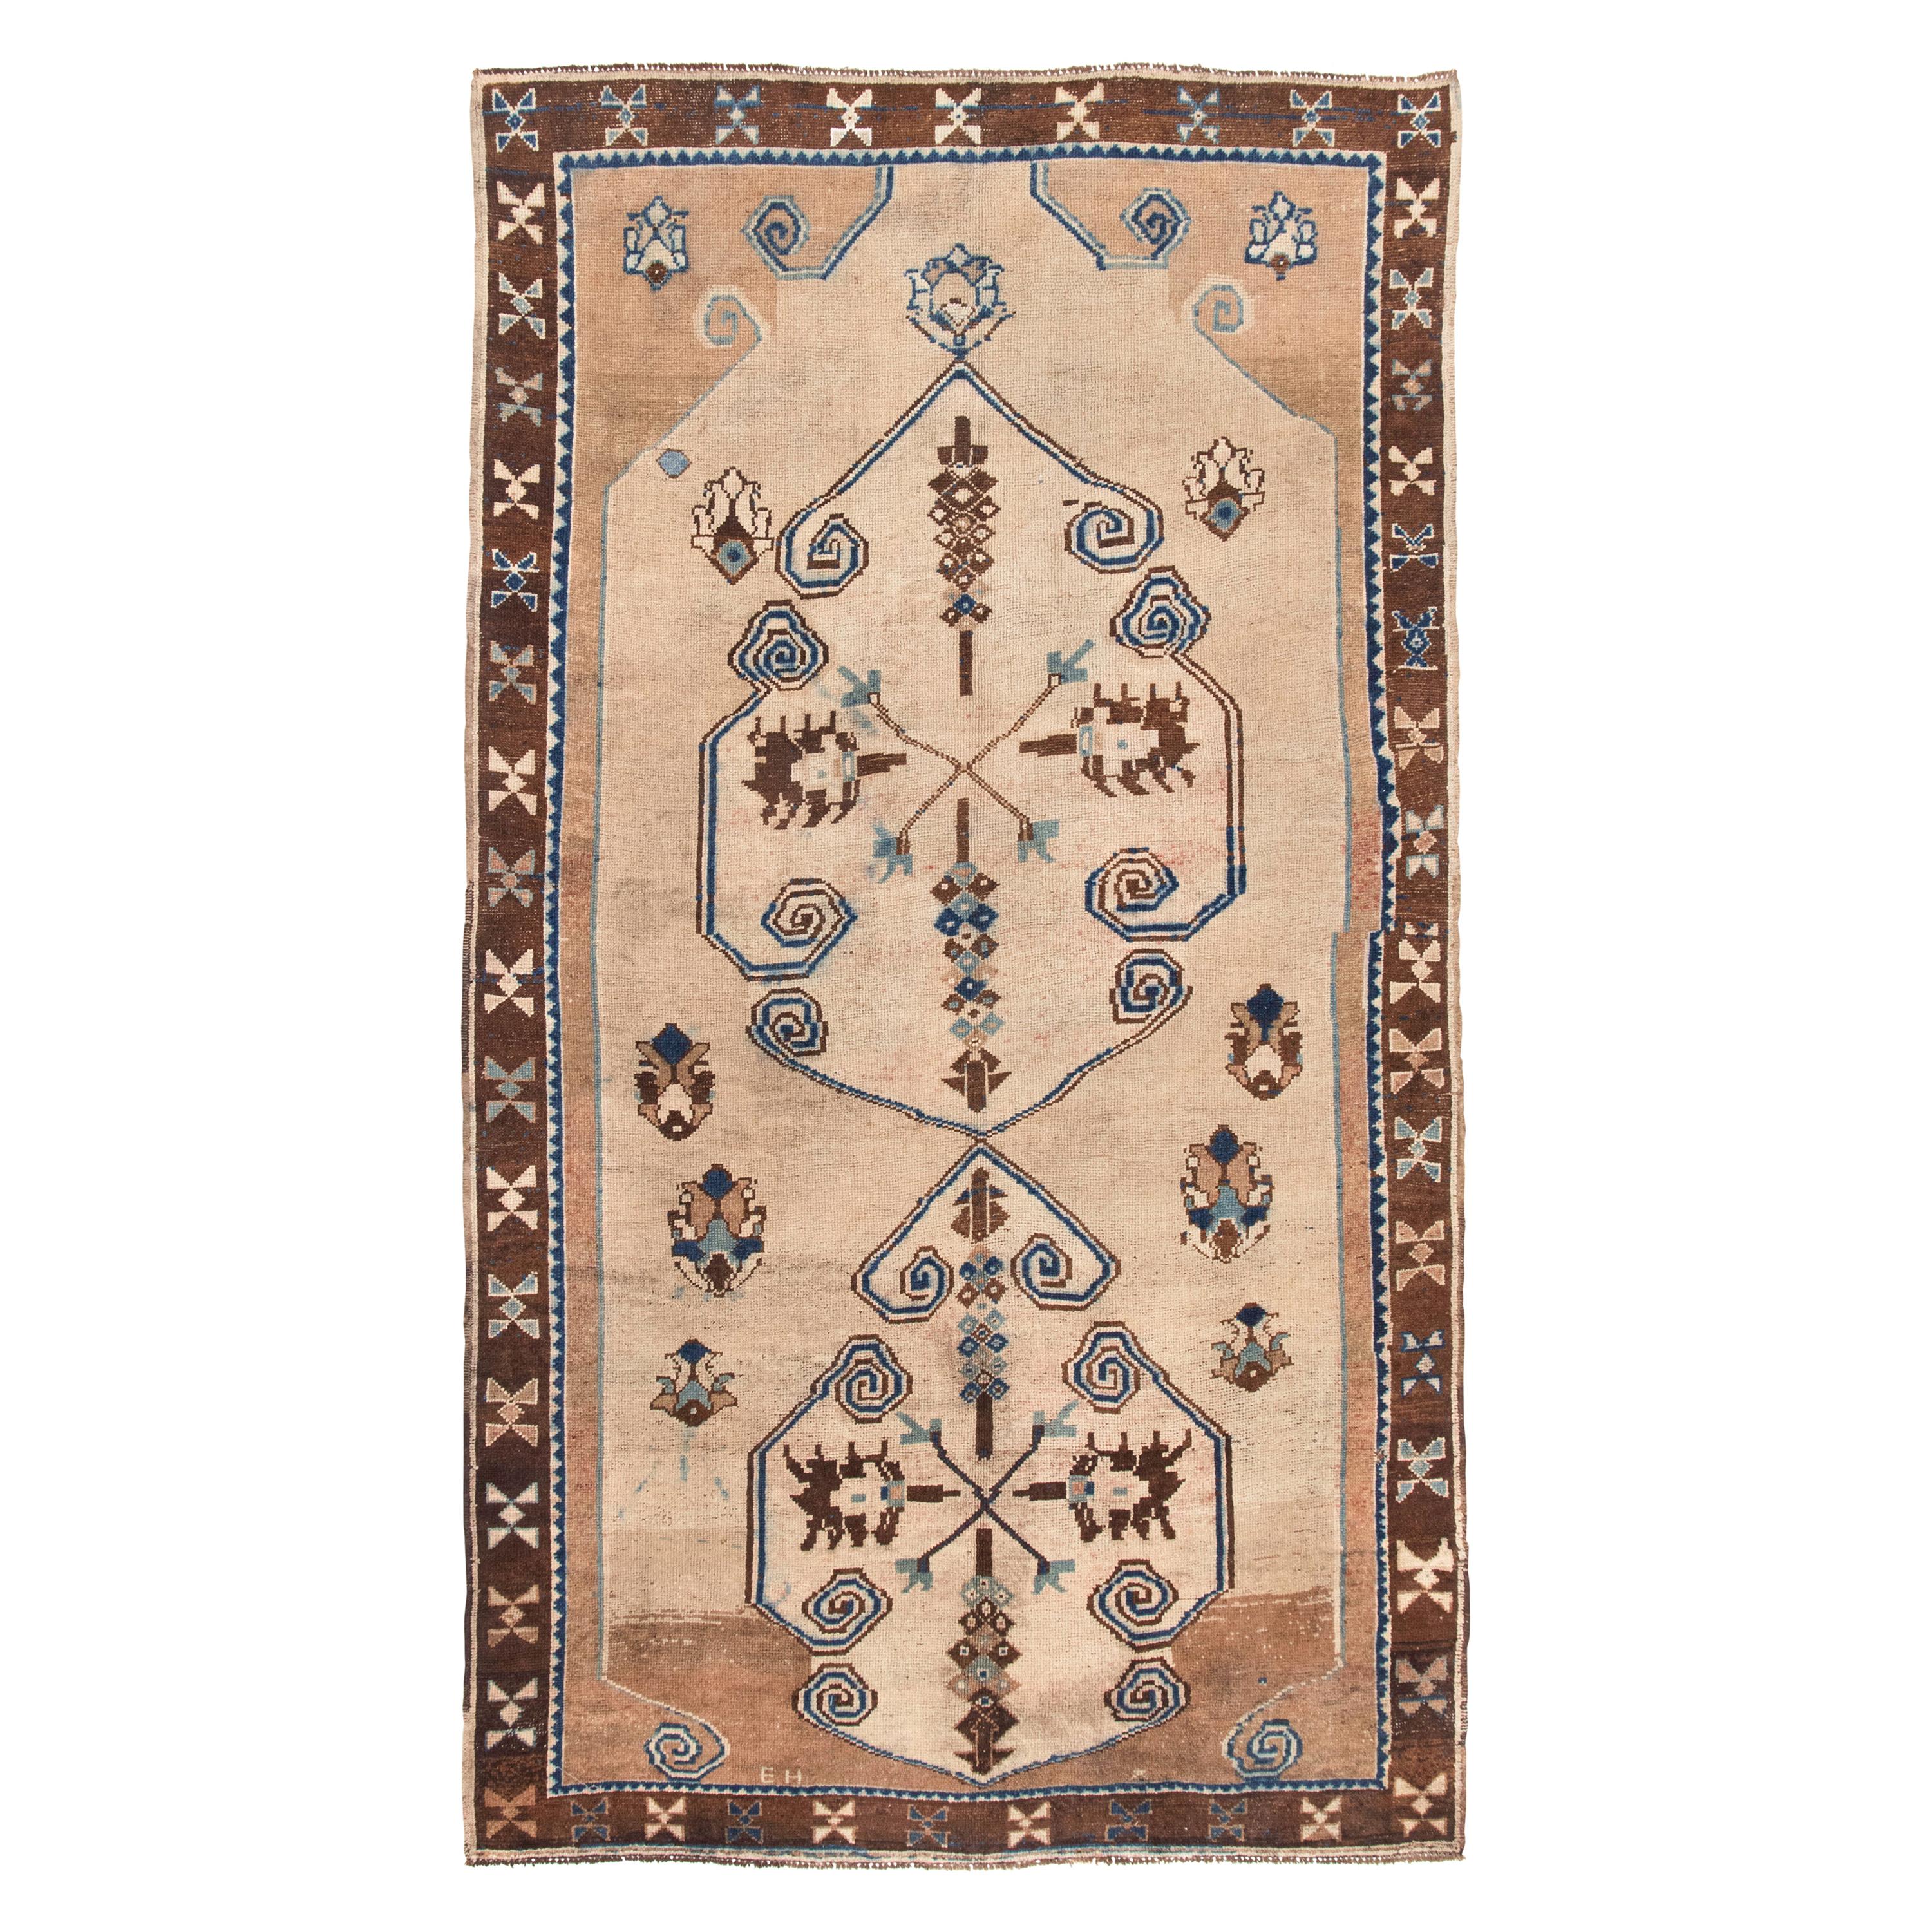 Türkischer antiker türkischer Teppich, um 1900 